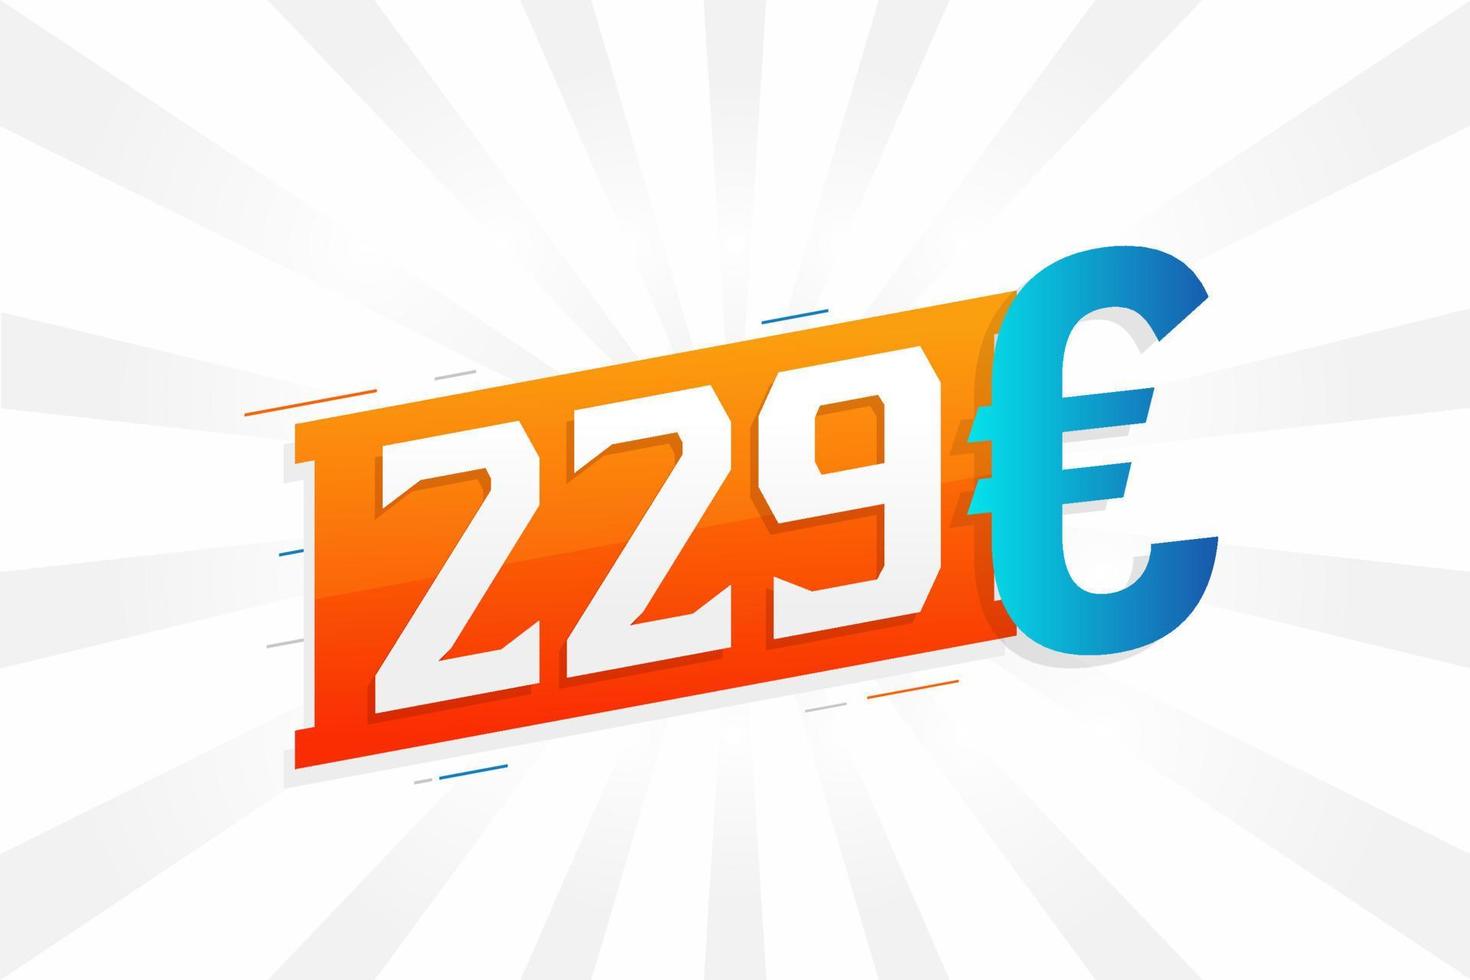 Symbole de texte vectoriel de devise 229 euros. 229 euros vecteur de stock d'argent de l'union européenne